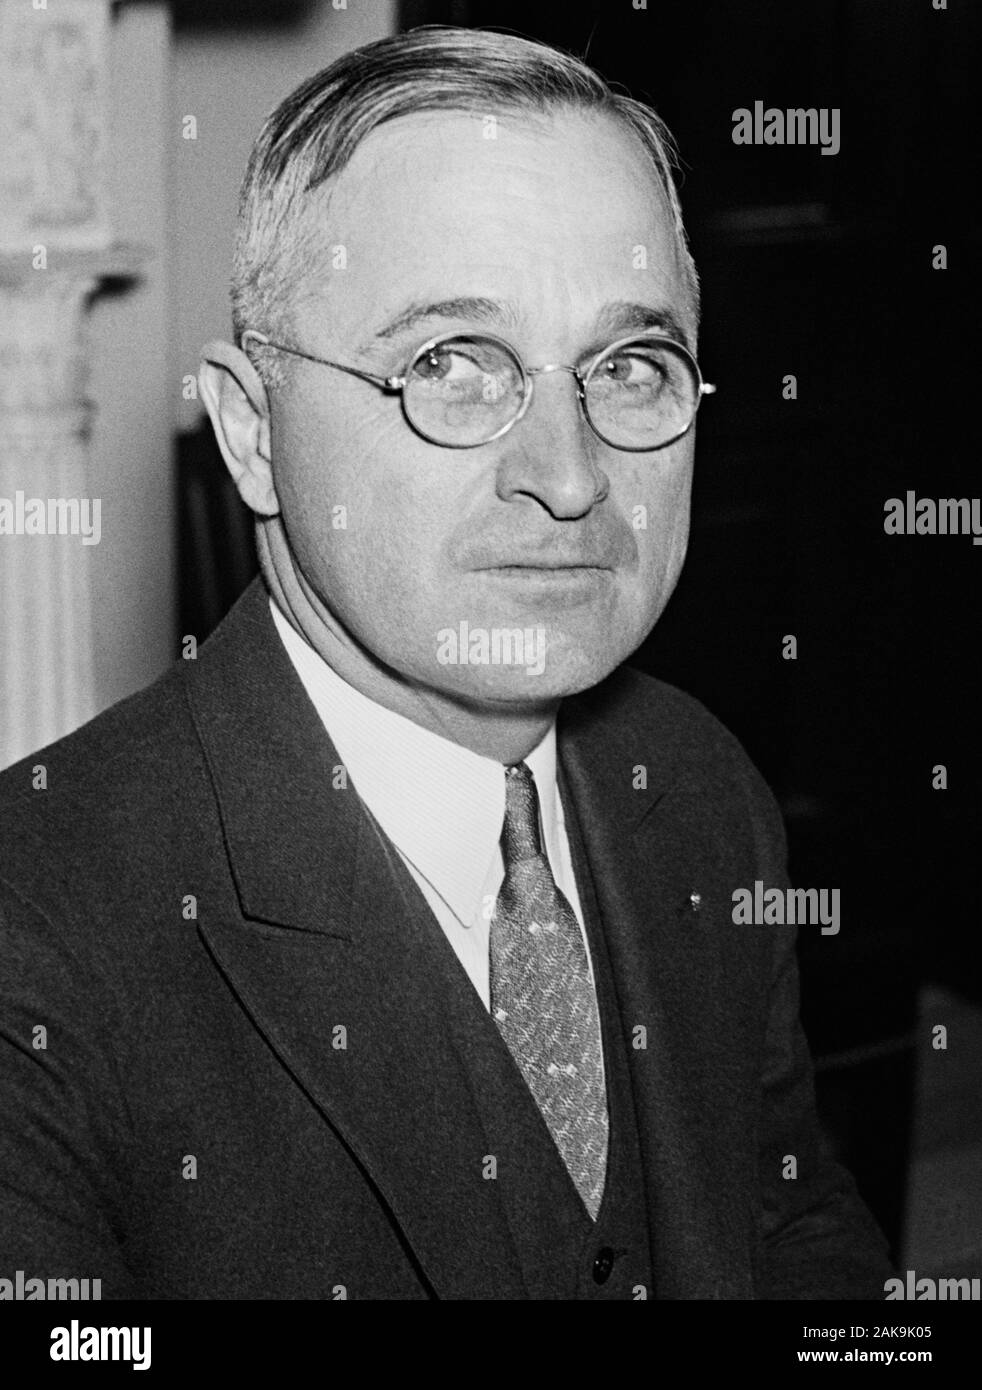 Jahrgang Porträt Foto von Missouri Senator - und künftige Präsident Harry S Truman. Foto ca. 1935 von Harris & Ewing. Truman (1884-1972) später in der 33., US-Präsident (1945 - 1953). Stockfoto